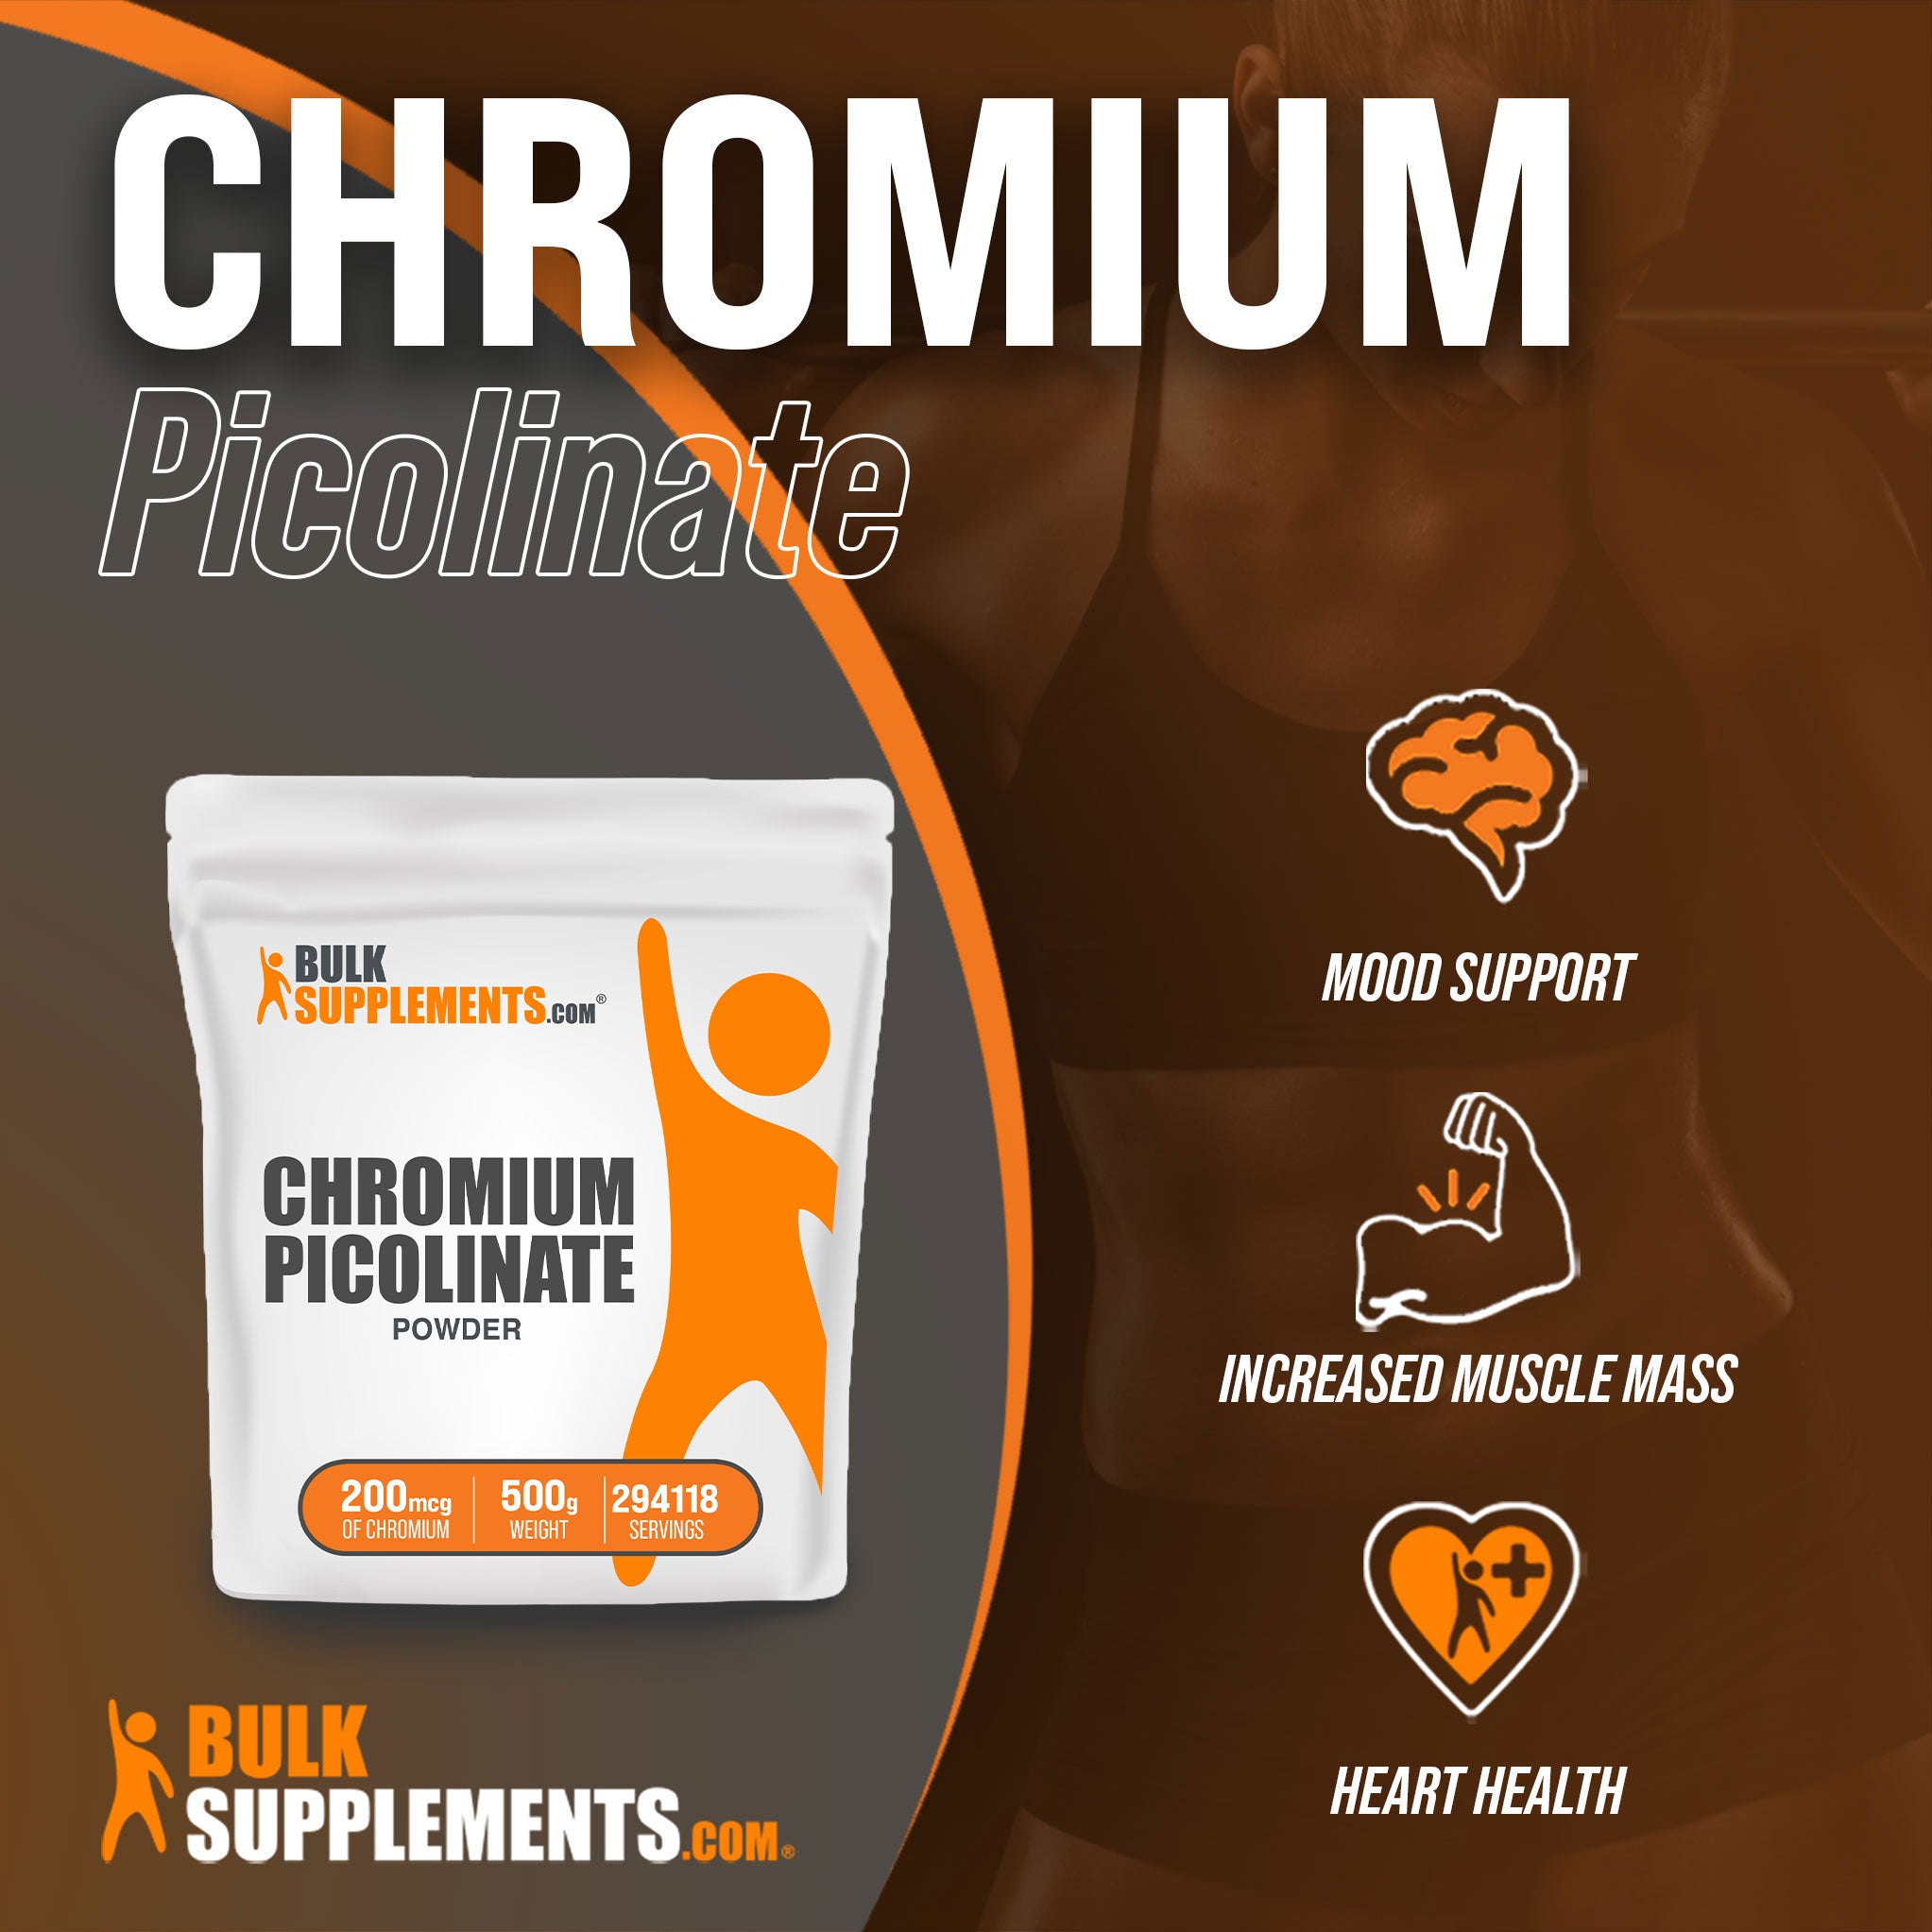 500g of Chromium Picolinate Supplement Facts